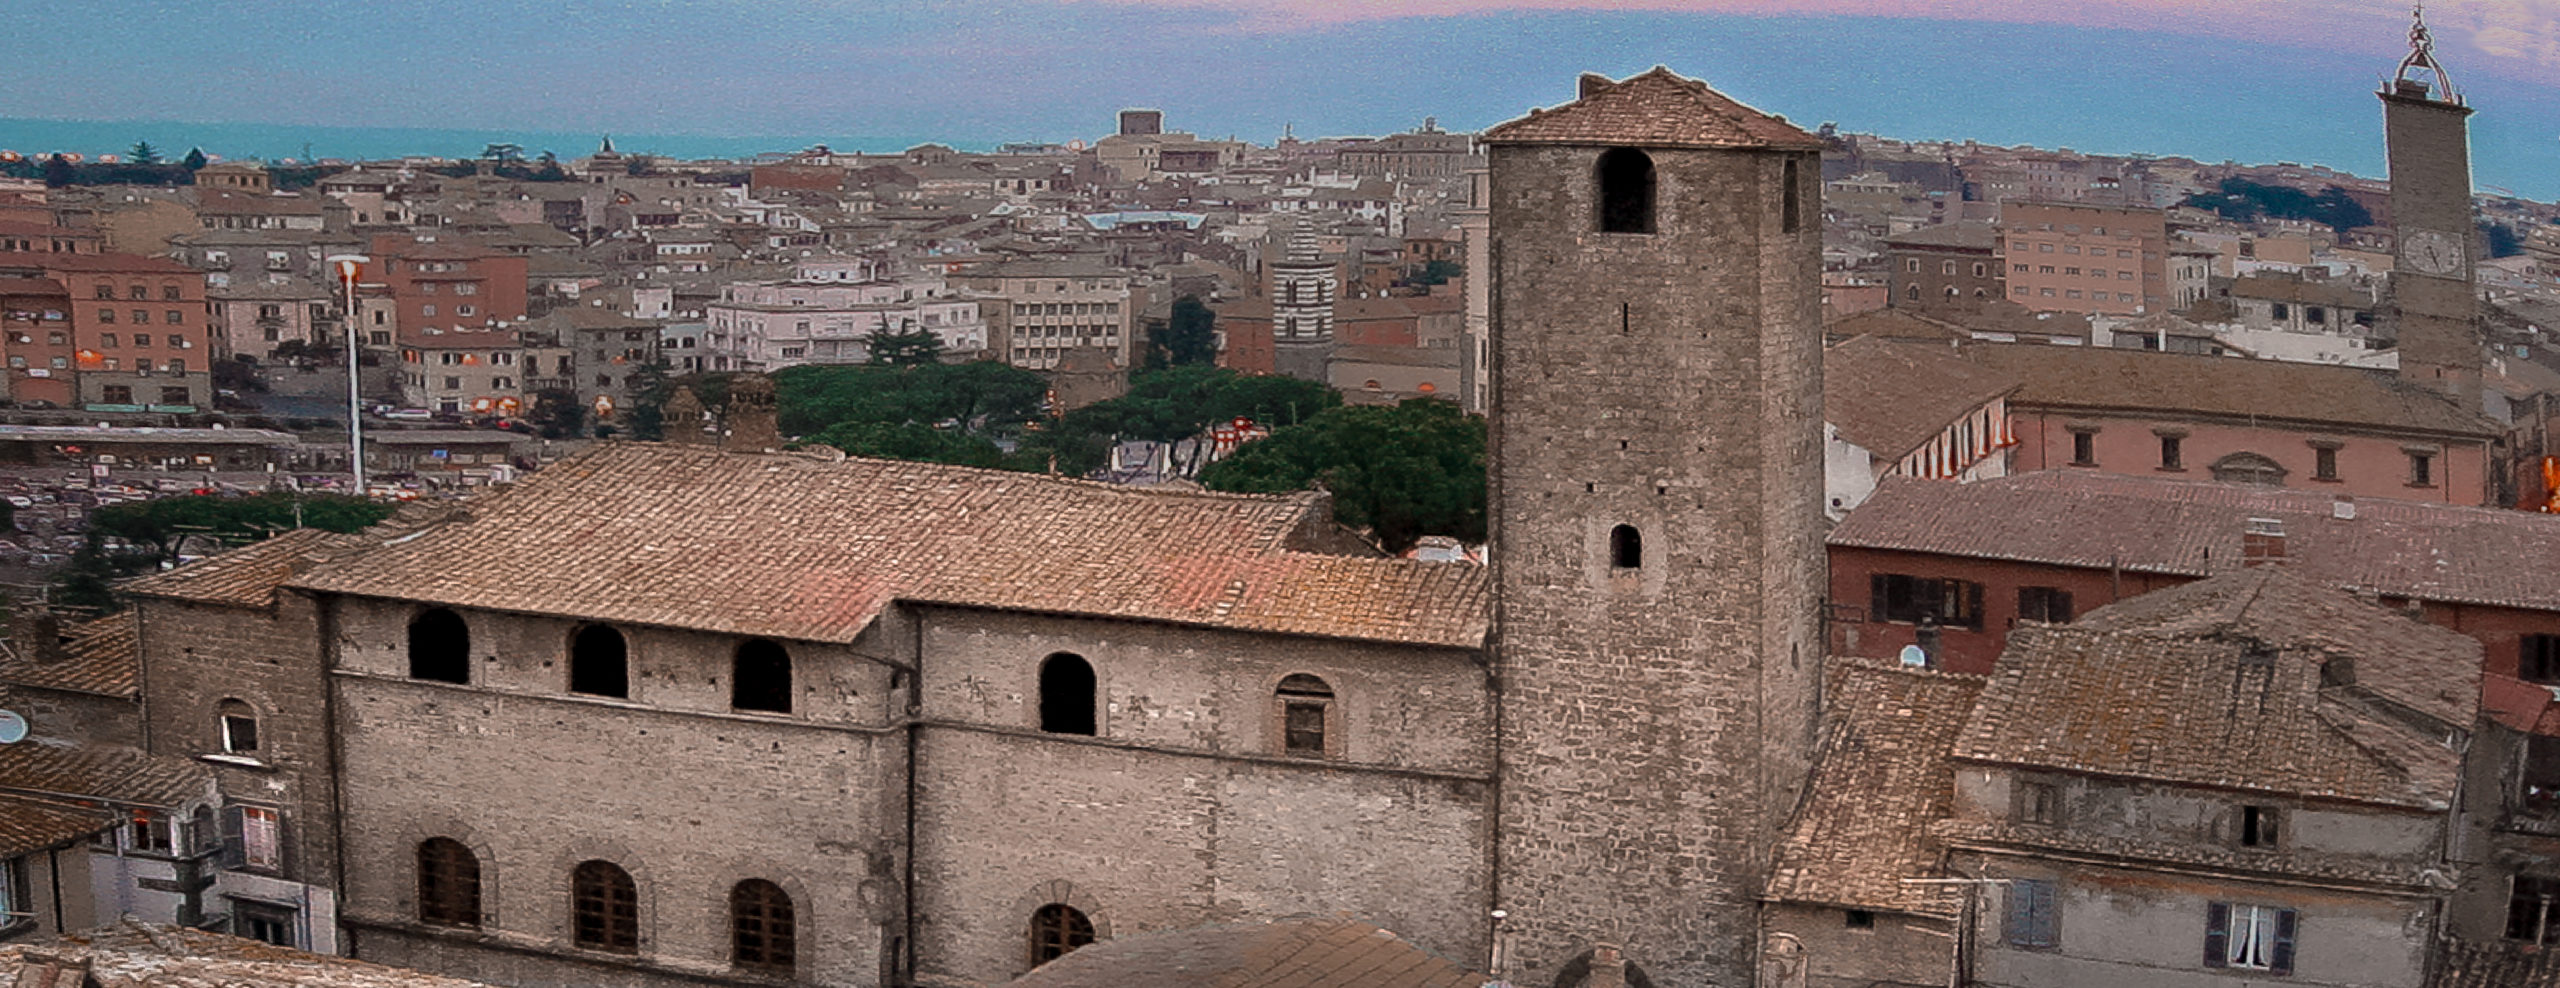 Viterbo - Veduta di Palazzo Chigi dalla torre del Borgognone